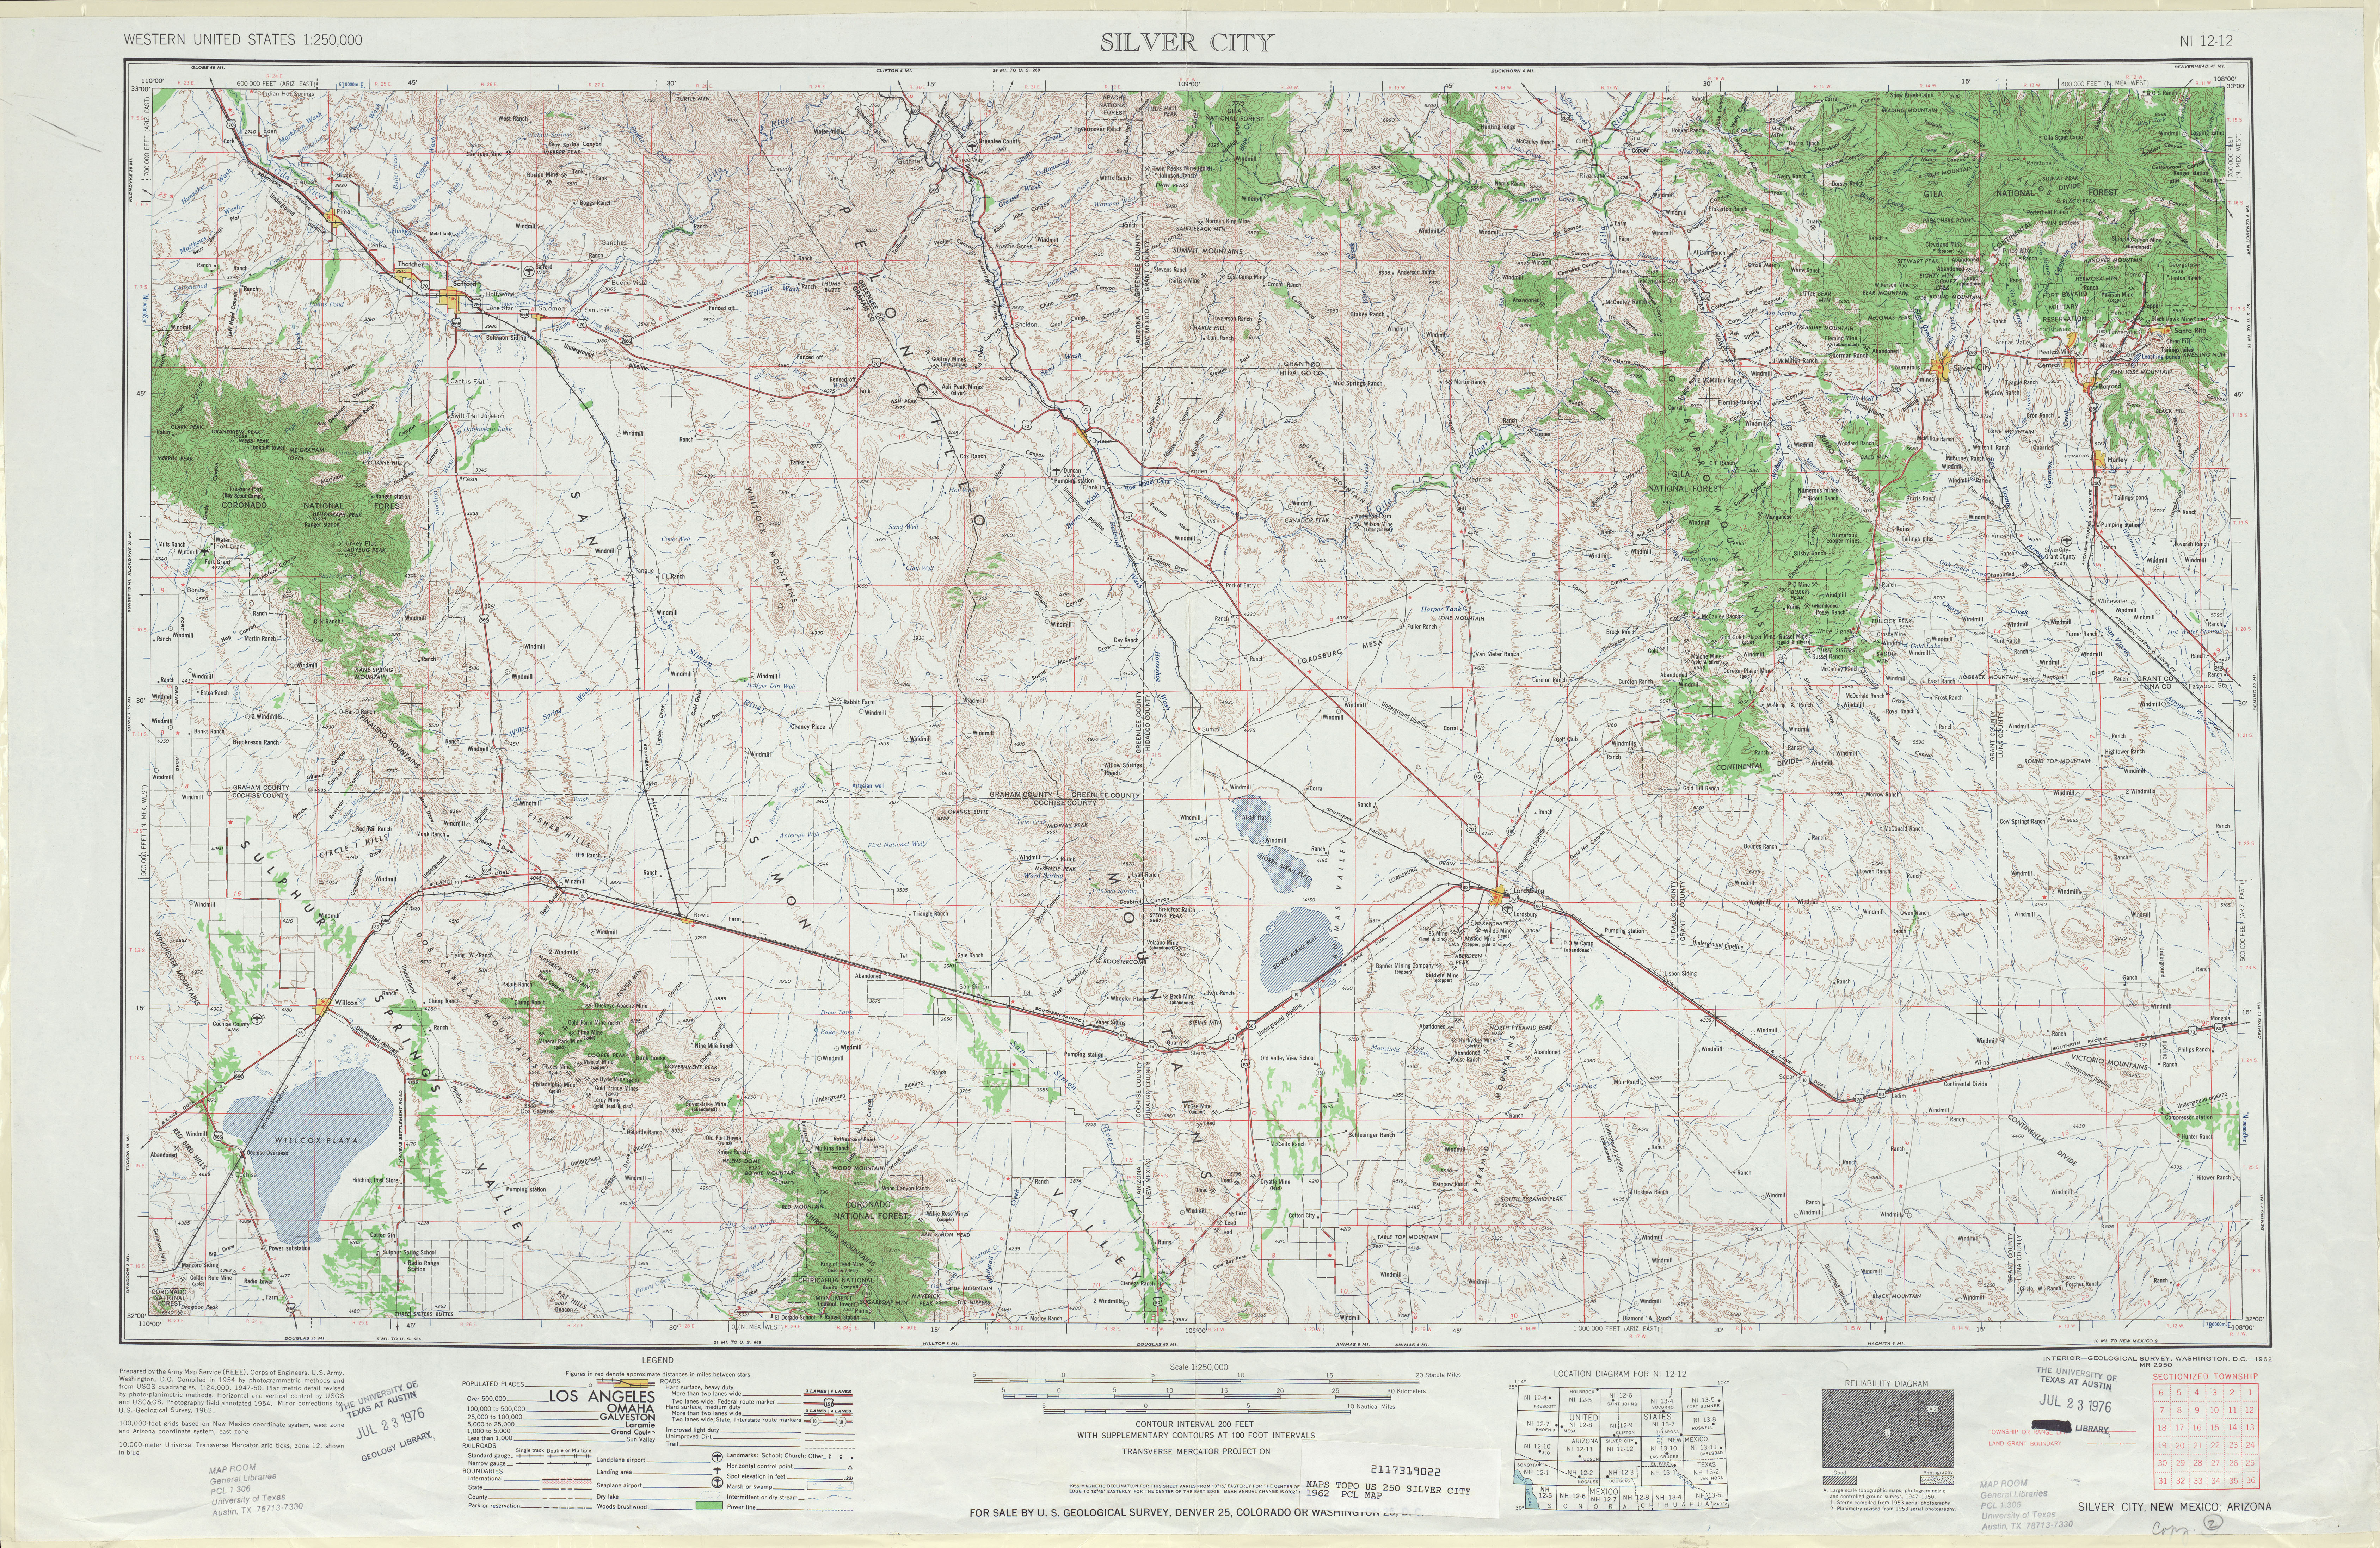 Hoja Silver City del Mapa Topográfico de los Estados Unidos 1962